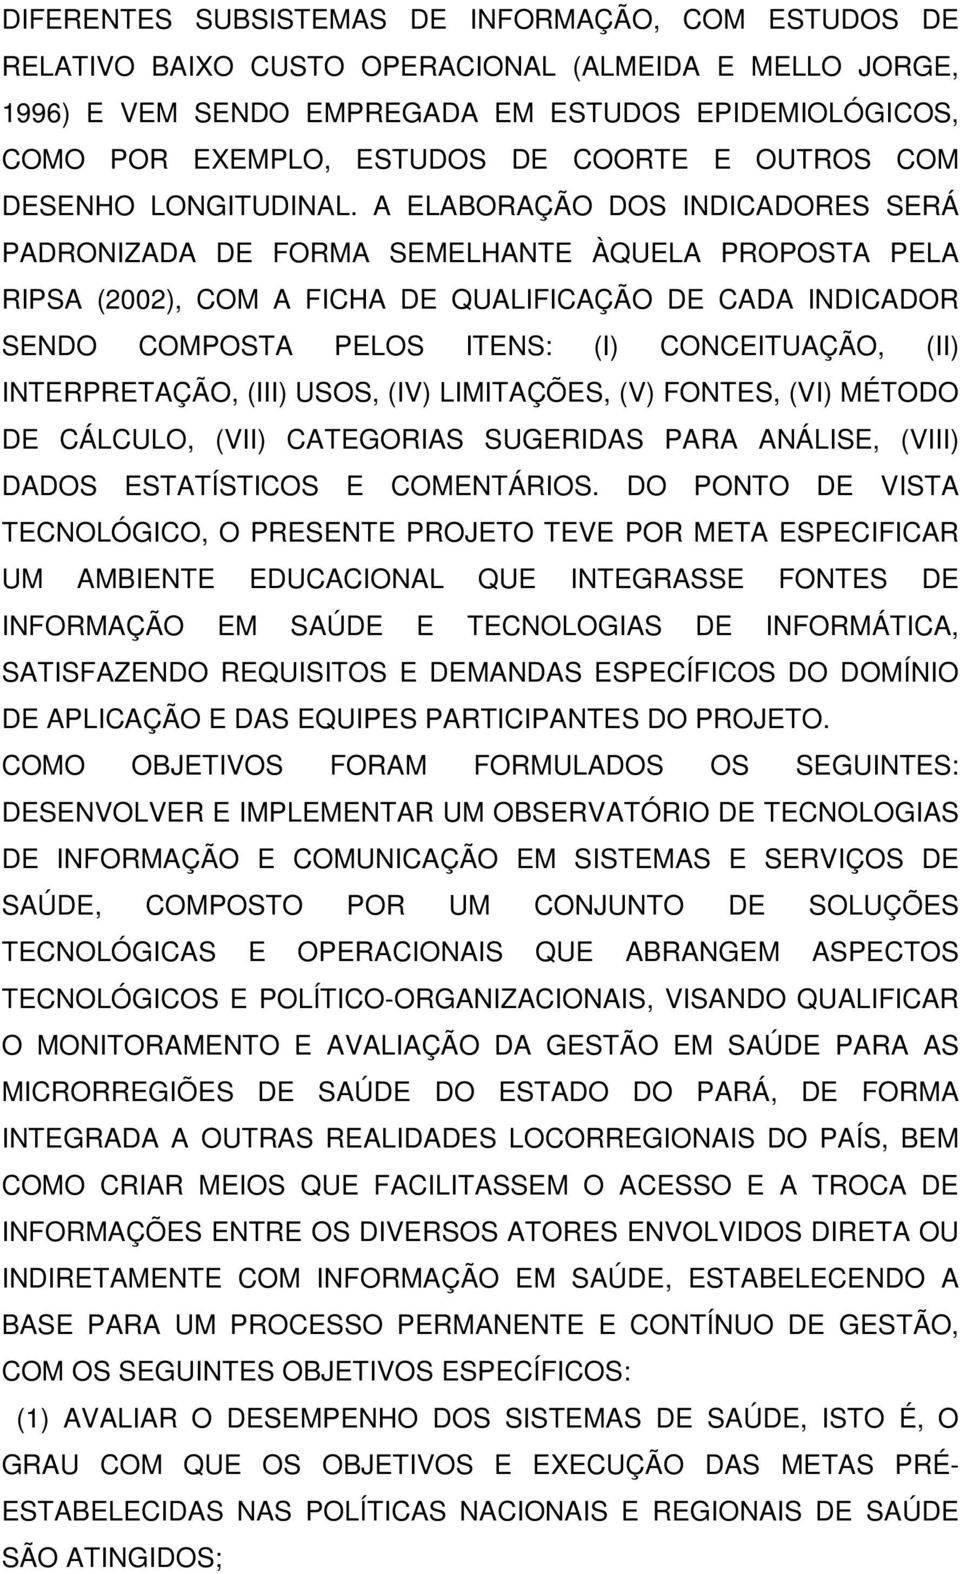 A ELABORAÇÃO DOS INDICADORES SERÁ PADRONIZADA DE FORMA SEMELHANTE ÀQUELA PROPOSTA PELA RIPSA (2002), COM A FICHA DE QUALIFICAÇÃO DE CADA INDICADOR SENDO COMPOSTA PELOS ITENS: (I) CONCEITUAÇÃO, (II)